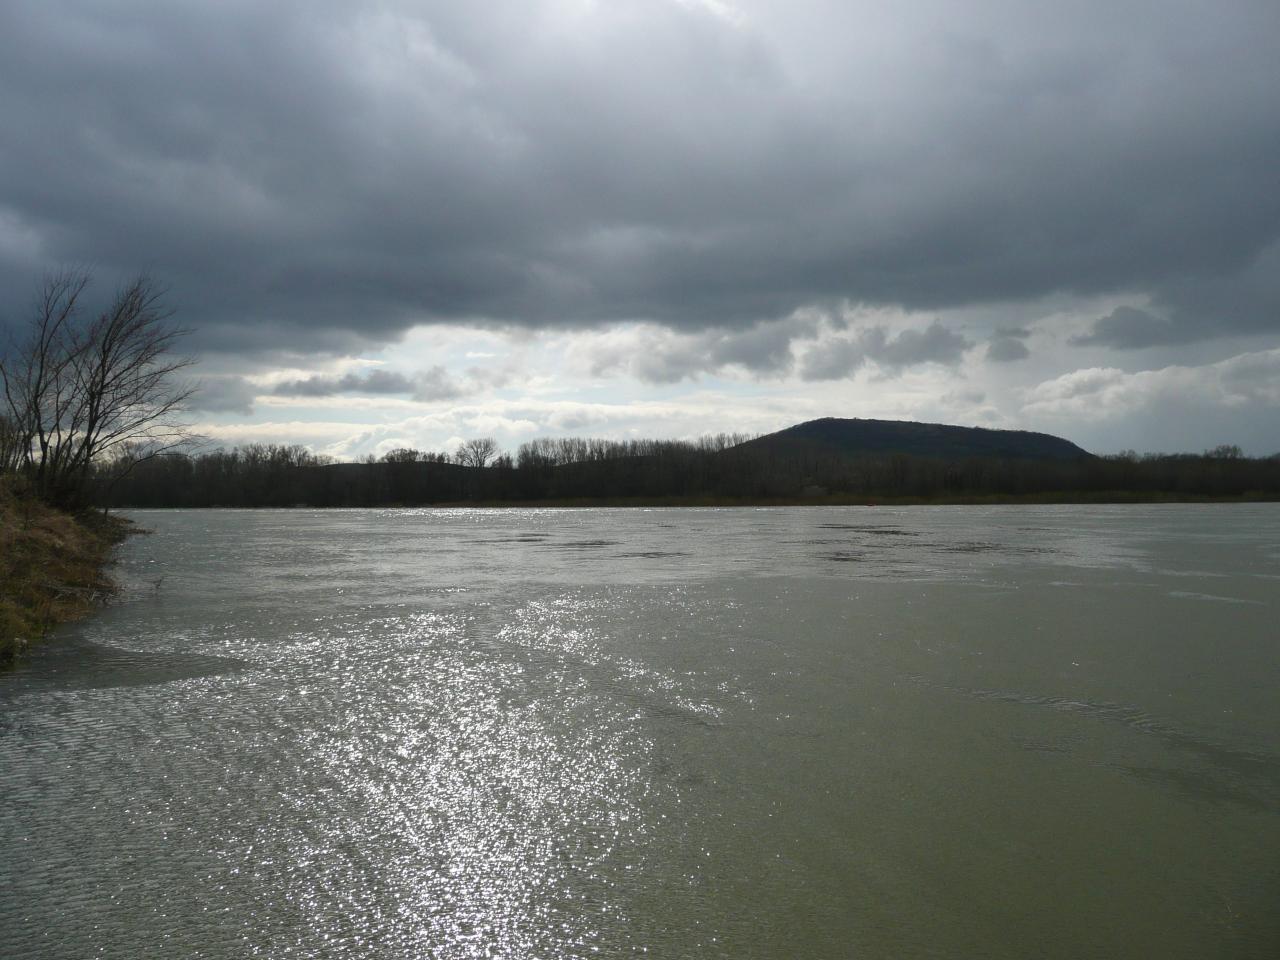 Dunaj kulminoval už aj v Komárne a v Štúrove